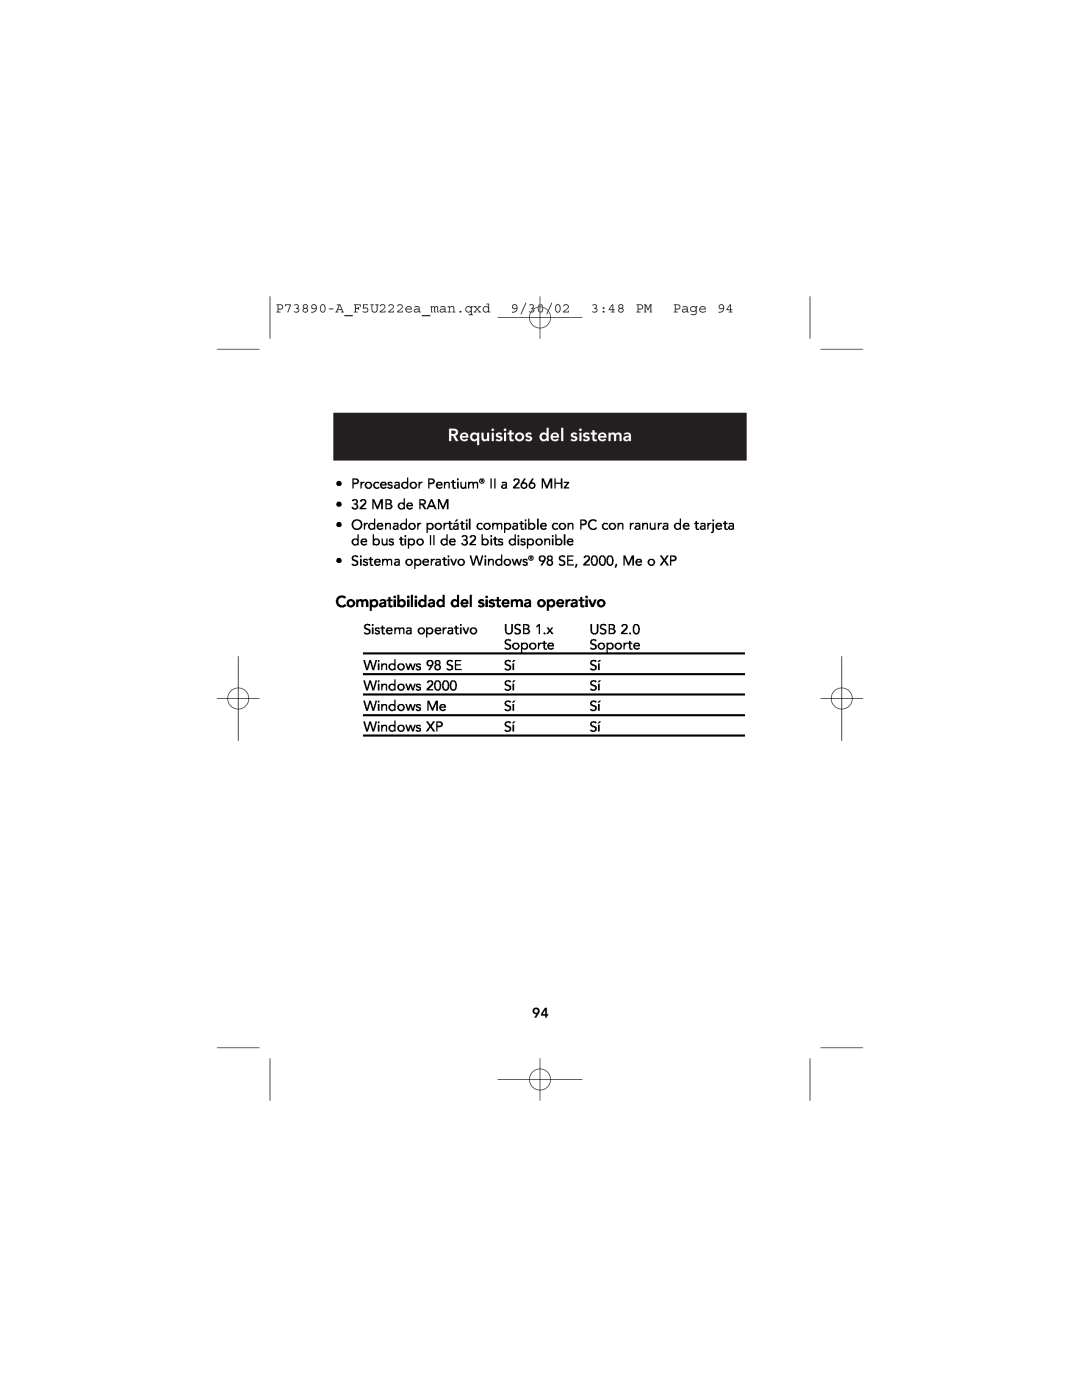 Belkin P73890EA-A manual Requisitos del sistema, Compatibilidad del sistema operativo 